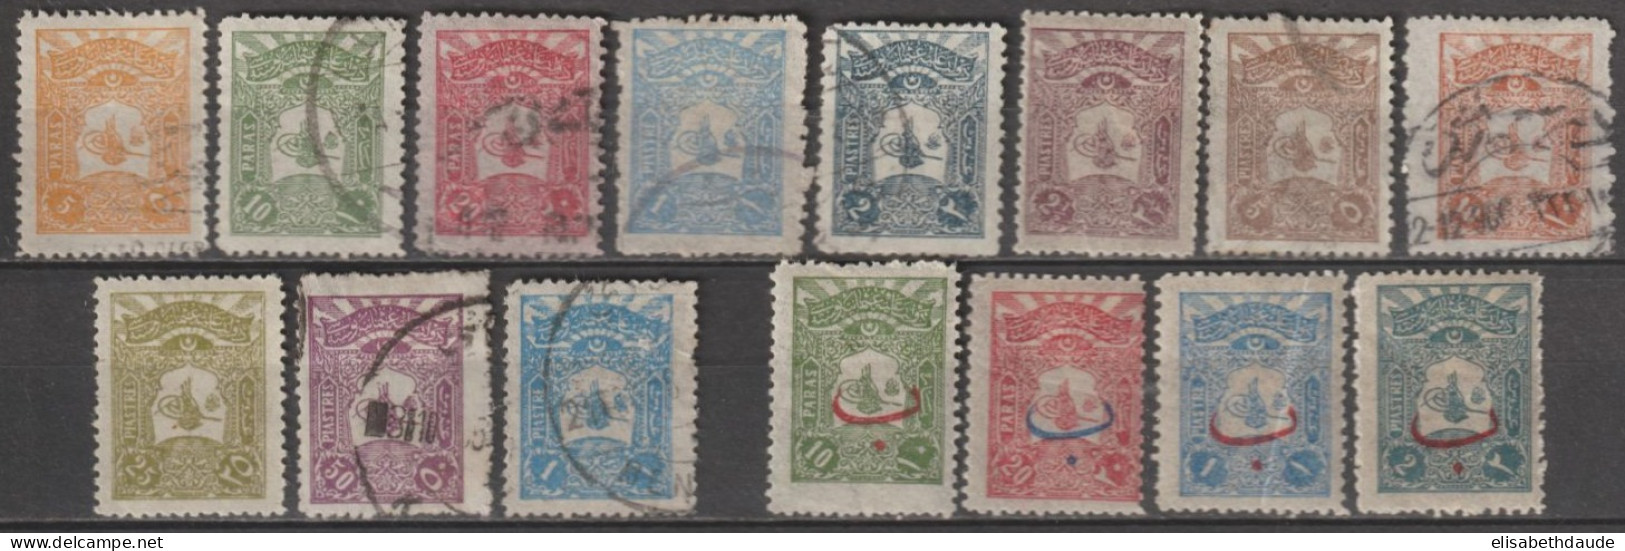 1905 - TURQUIE - SERIE COMPLETE YVERT N°106/119 * MH / OBLITERES - COTE = 49 EUR. - Unused Stamps